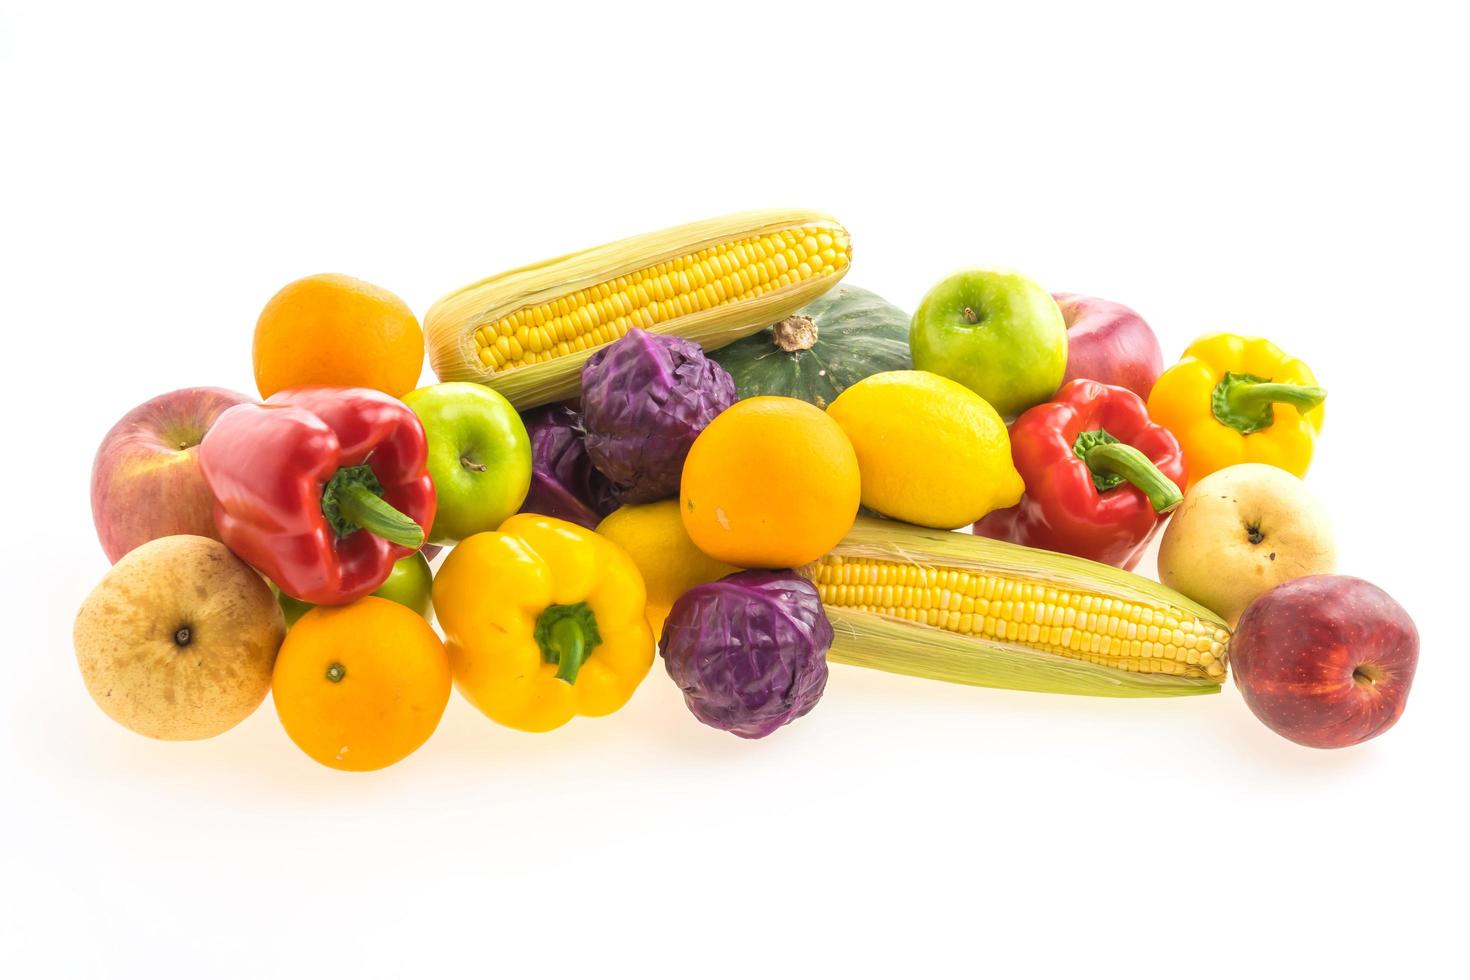 vegetales y frutas foto